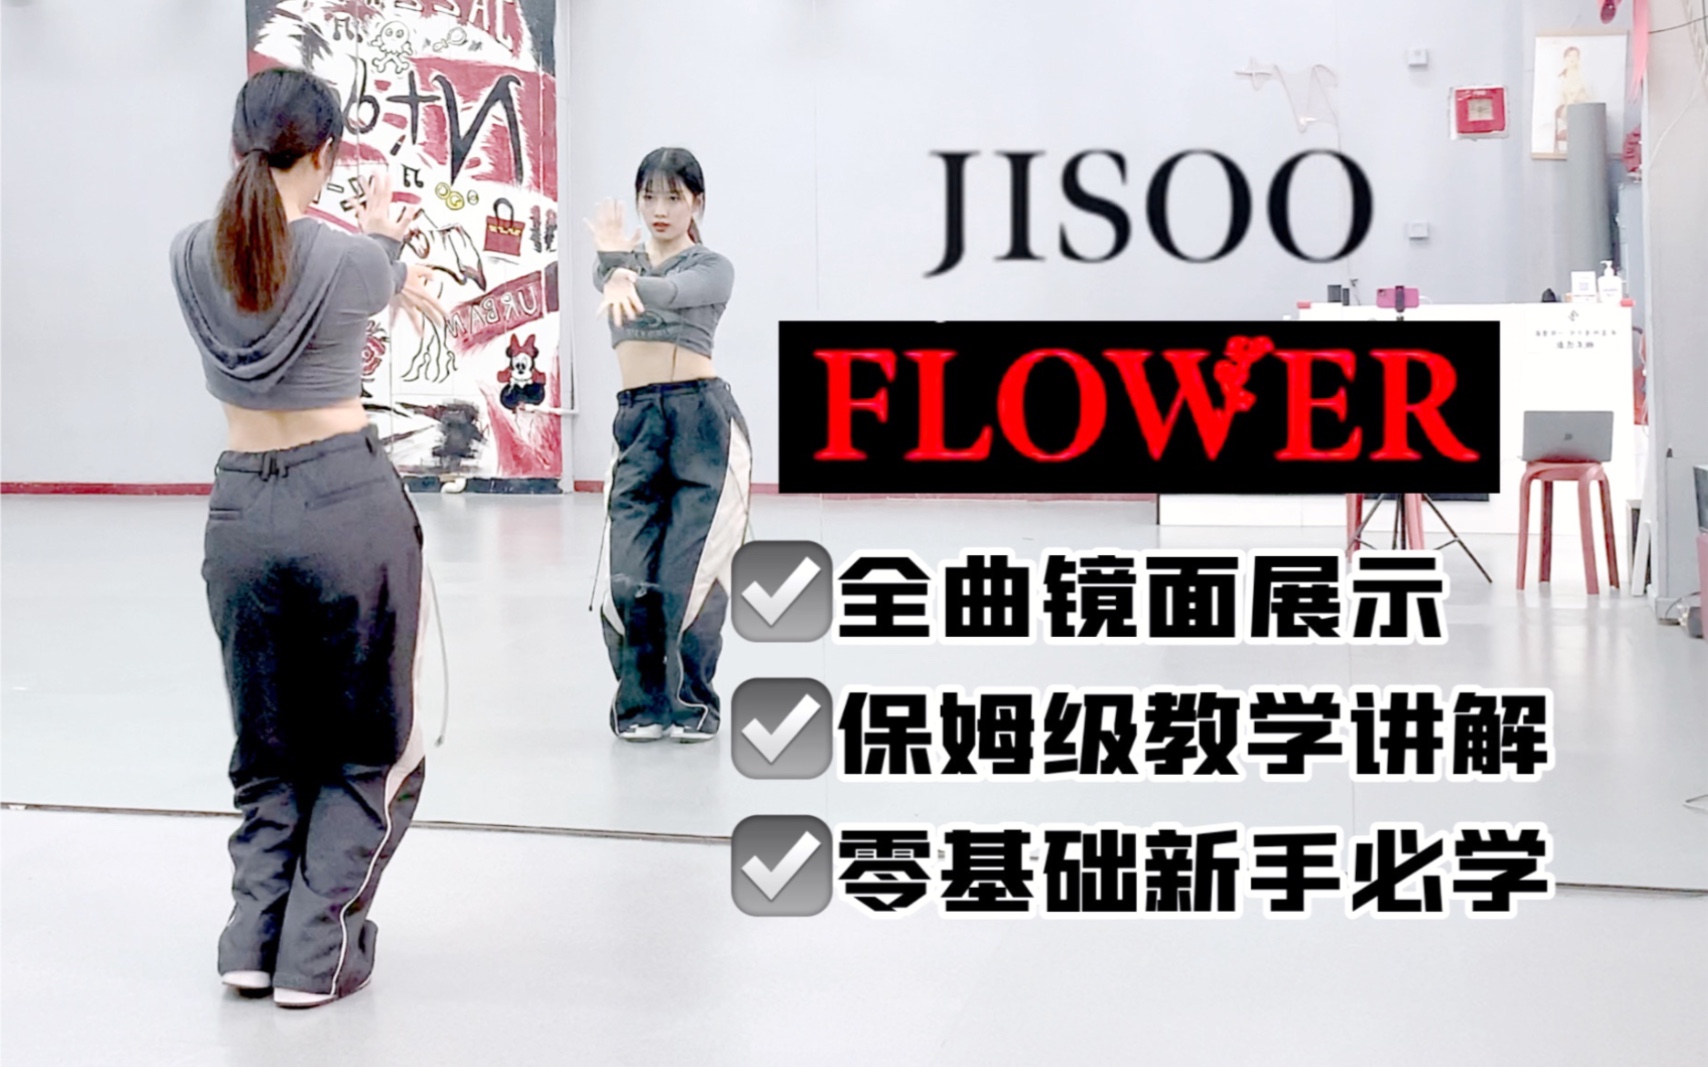 【全曲教学】JISOO-‘FLOWER’全曲保姆级教学教程 秀粉争做全网最快！【李铁锤】